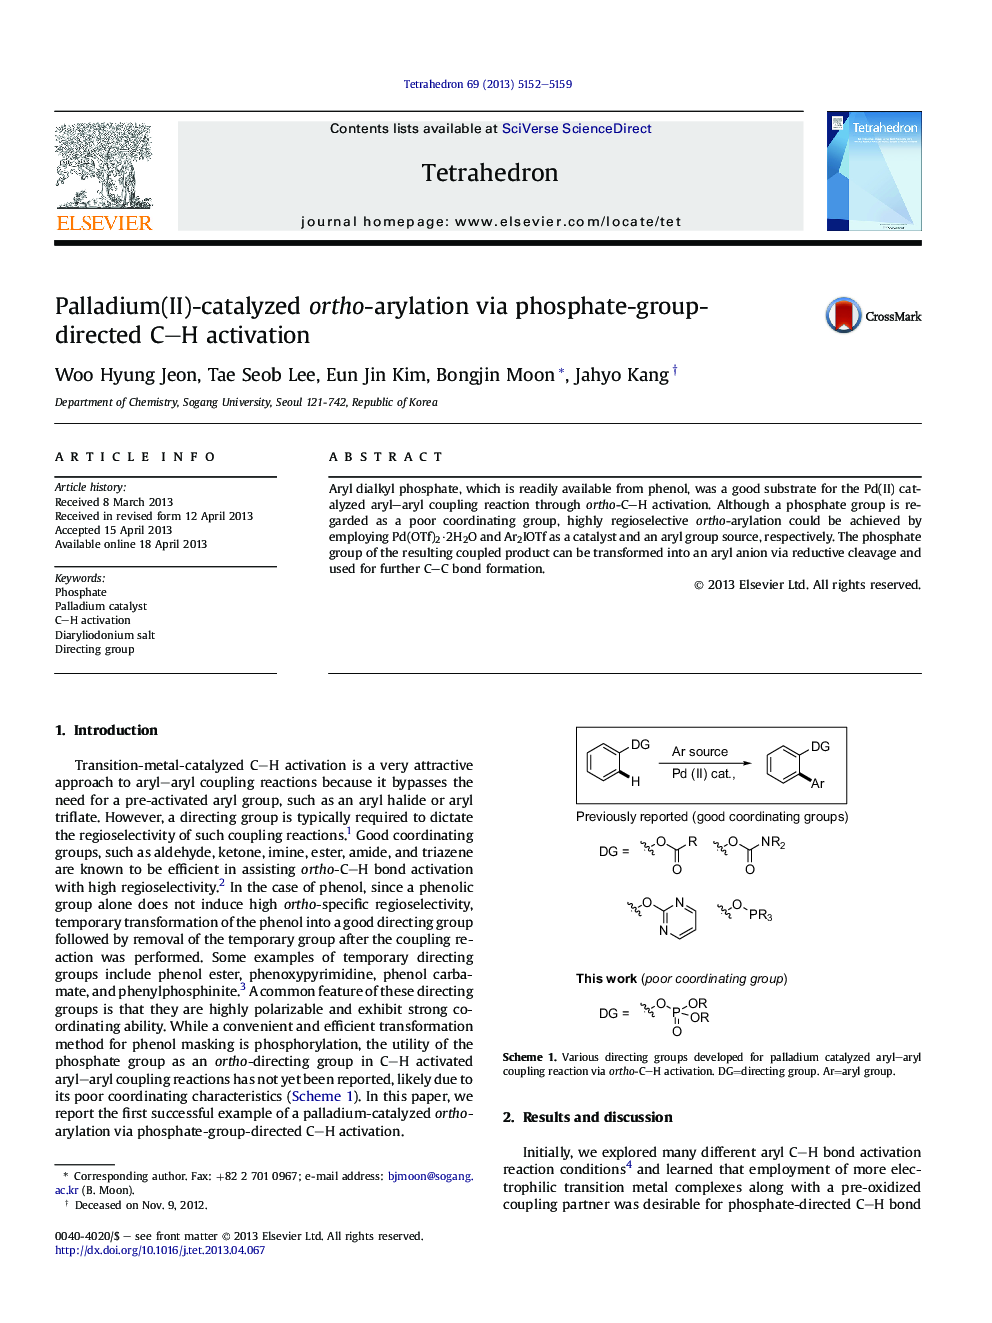 Palladium(II)-catalyzed ortho-arylation via phosphate-group-directed C-H activation